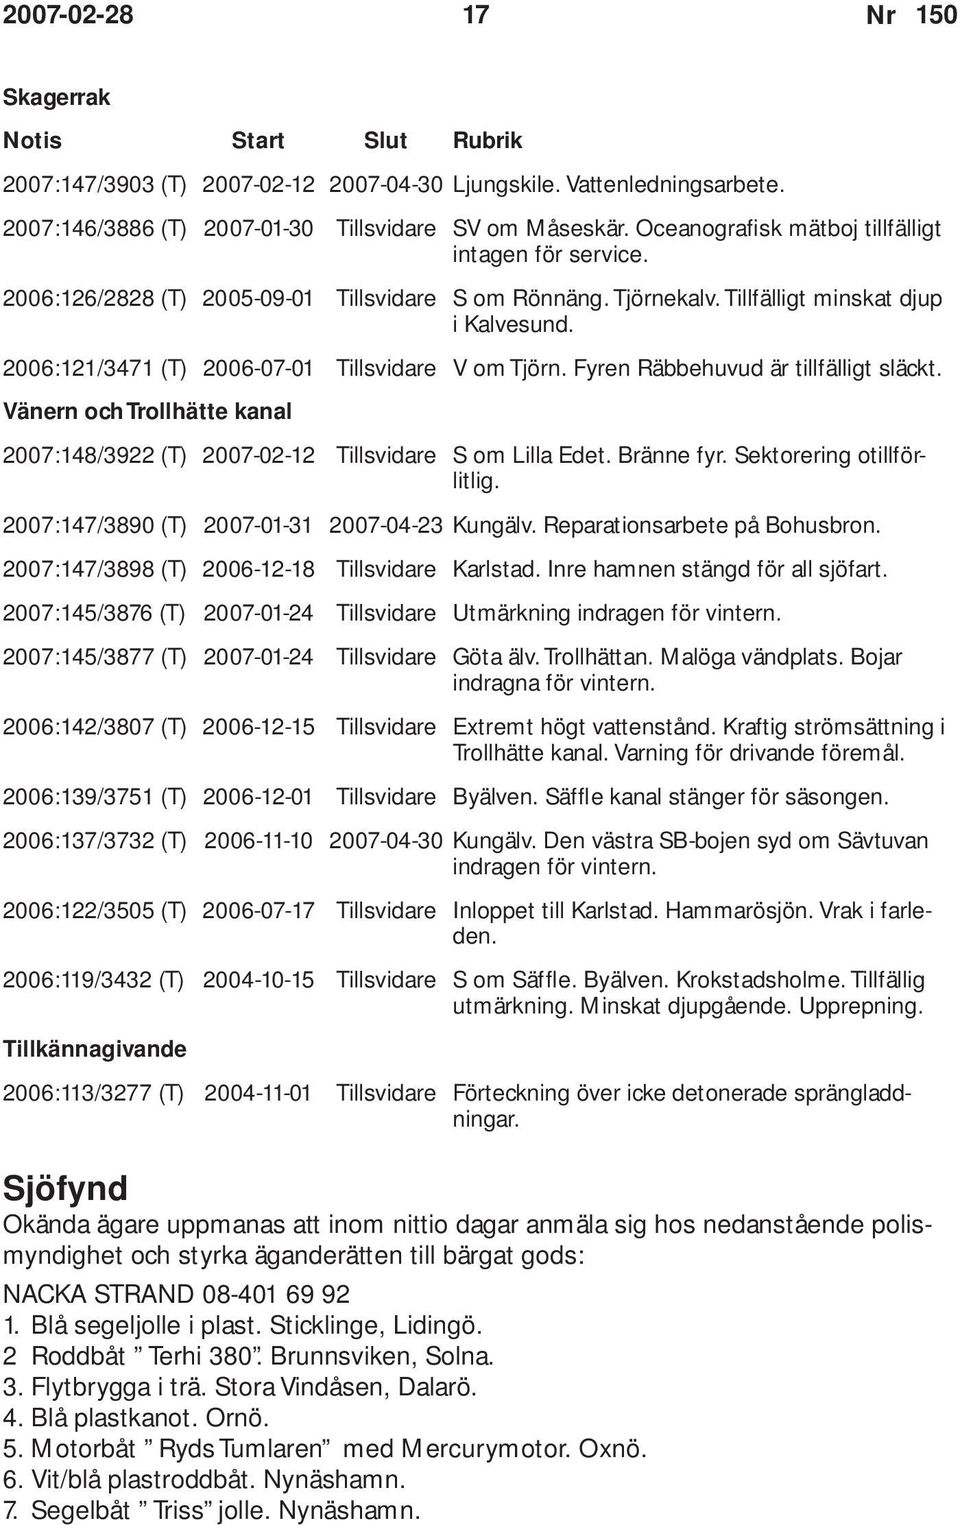 2006:121/3471 (T) 2006-07-01 Tillsvidare V om Tjörn. Fyren Räbbehuvud är tillfälligt släckt. Vänern och Trollhätte kanal 2007:148/3922 (T) 2007-02-12 Tillsvidare S om Lilla Edet. Bränne fyr.